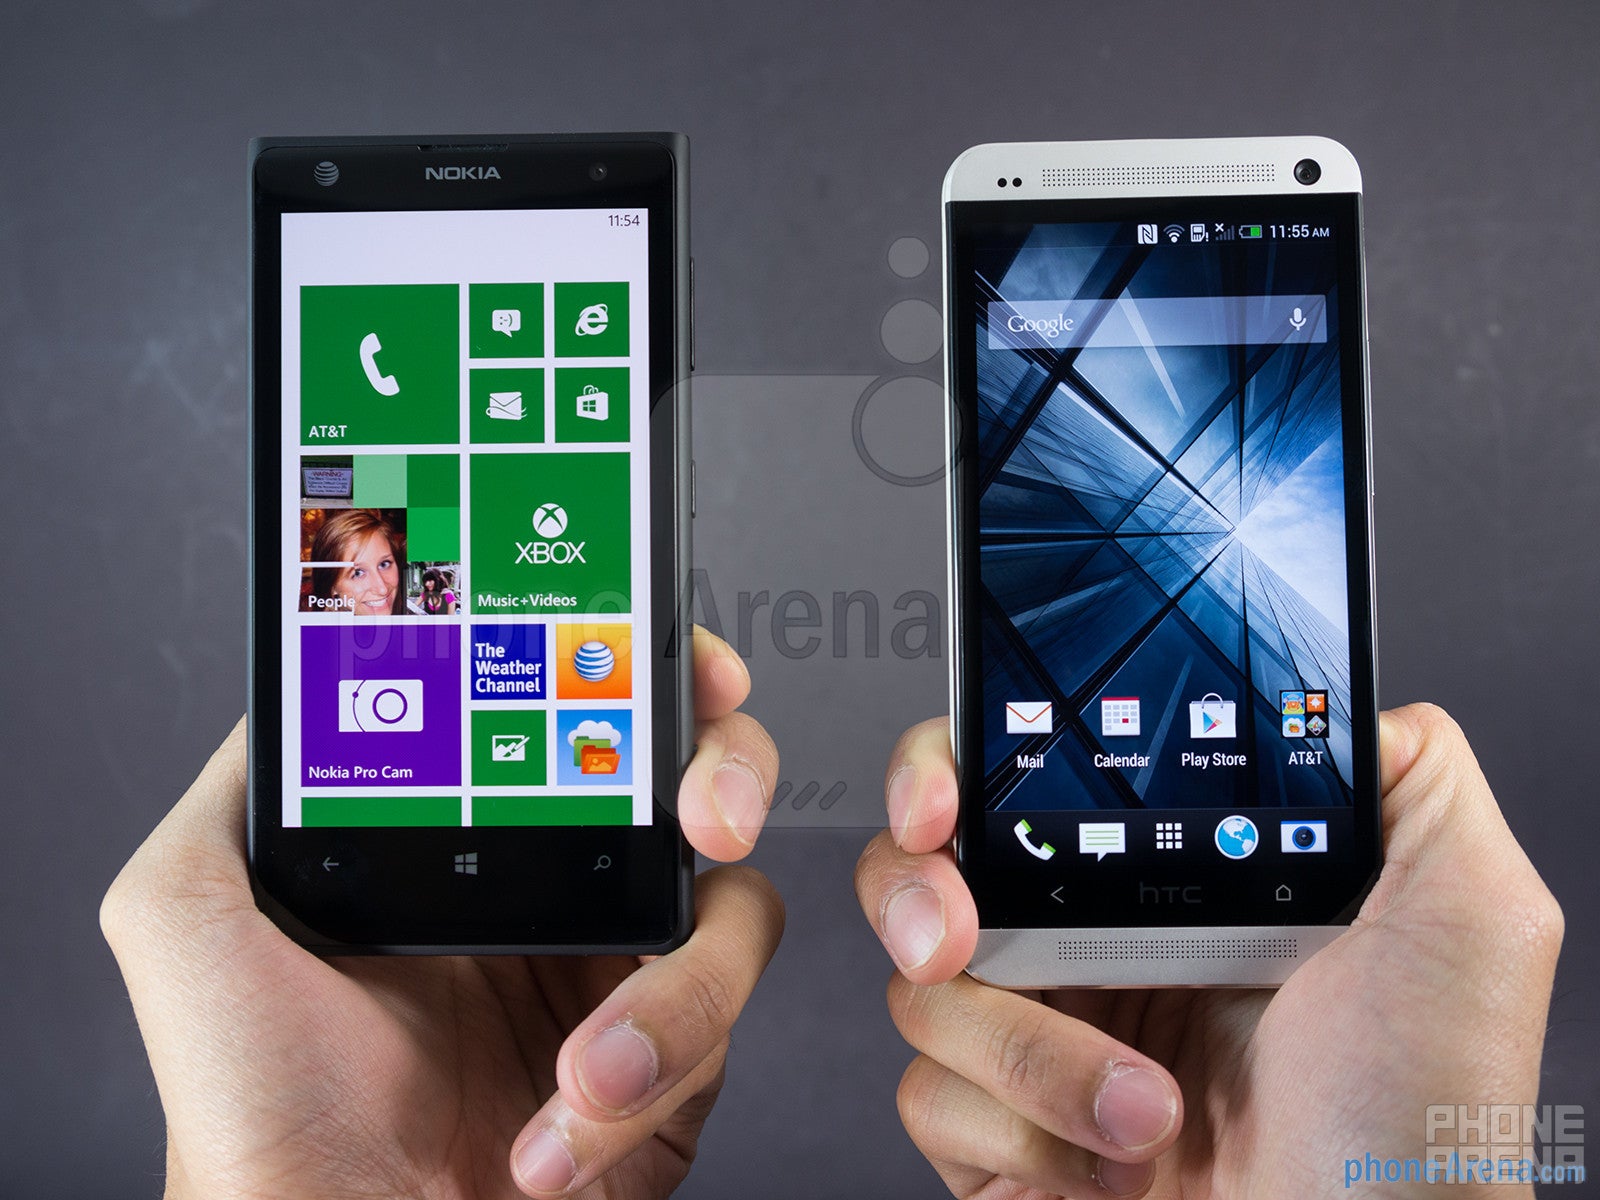 Nokia Lumia 1020 vs HTC One